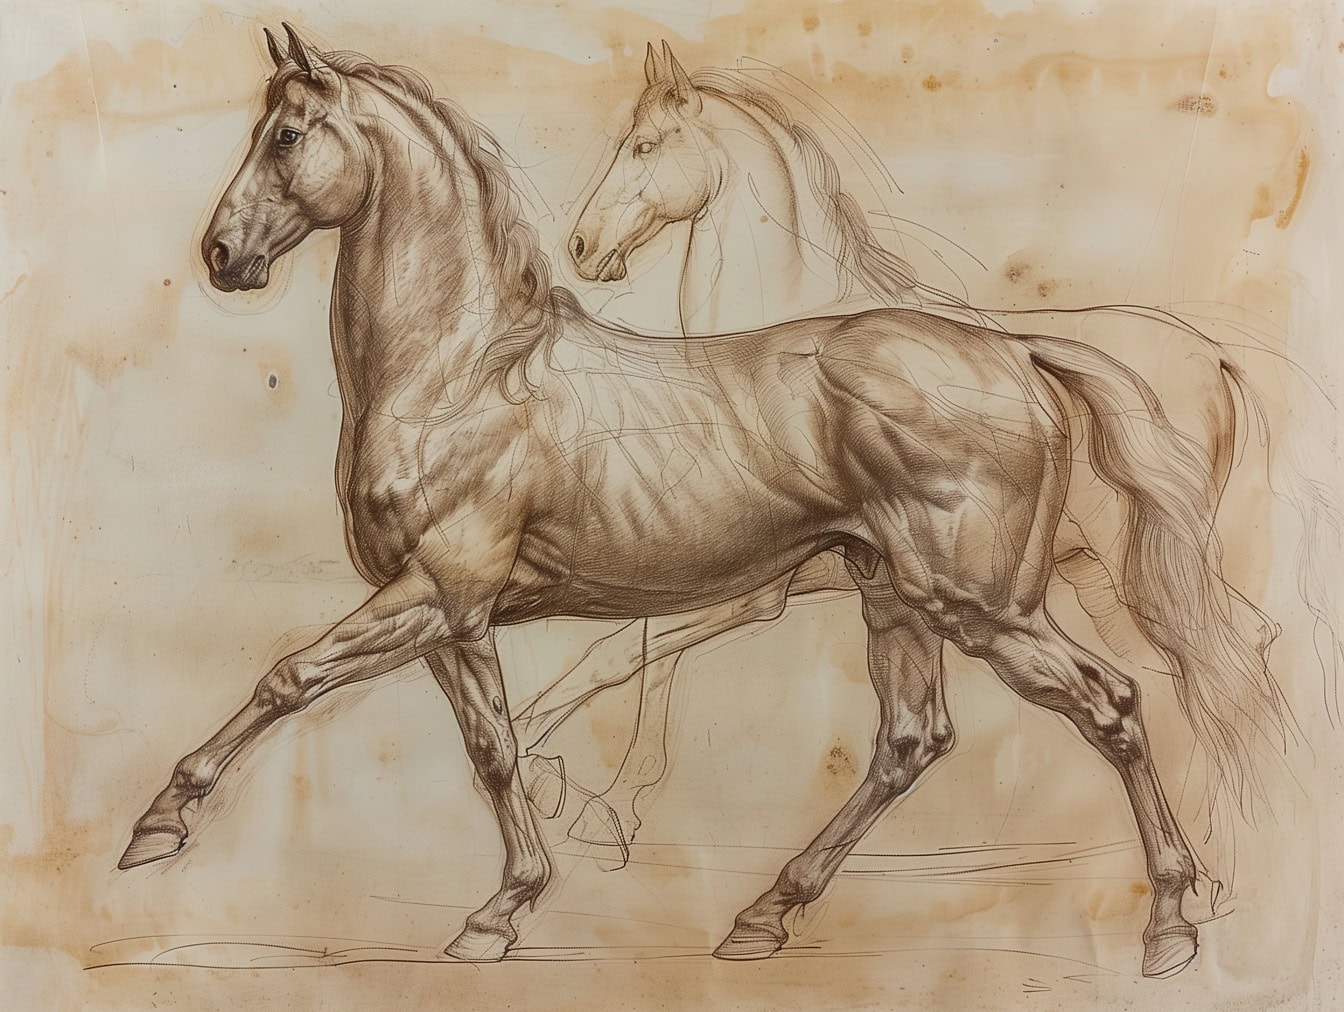 Малюнок двох коней на старому папері, жеребець попереду закінчений, а кінь на задньому плані ще є робочим ескізом